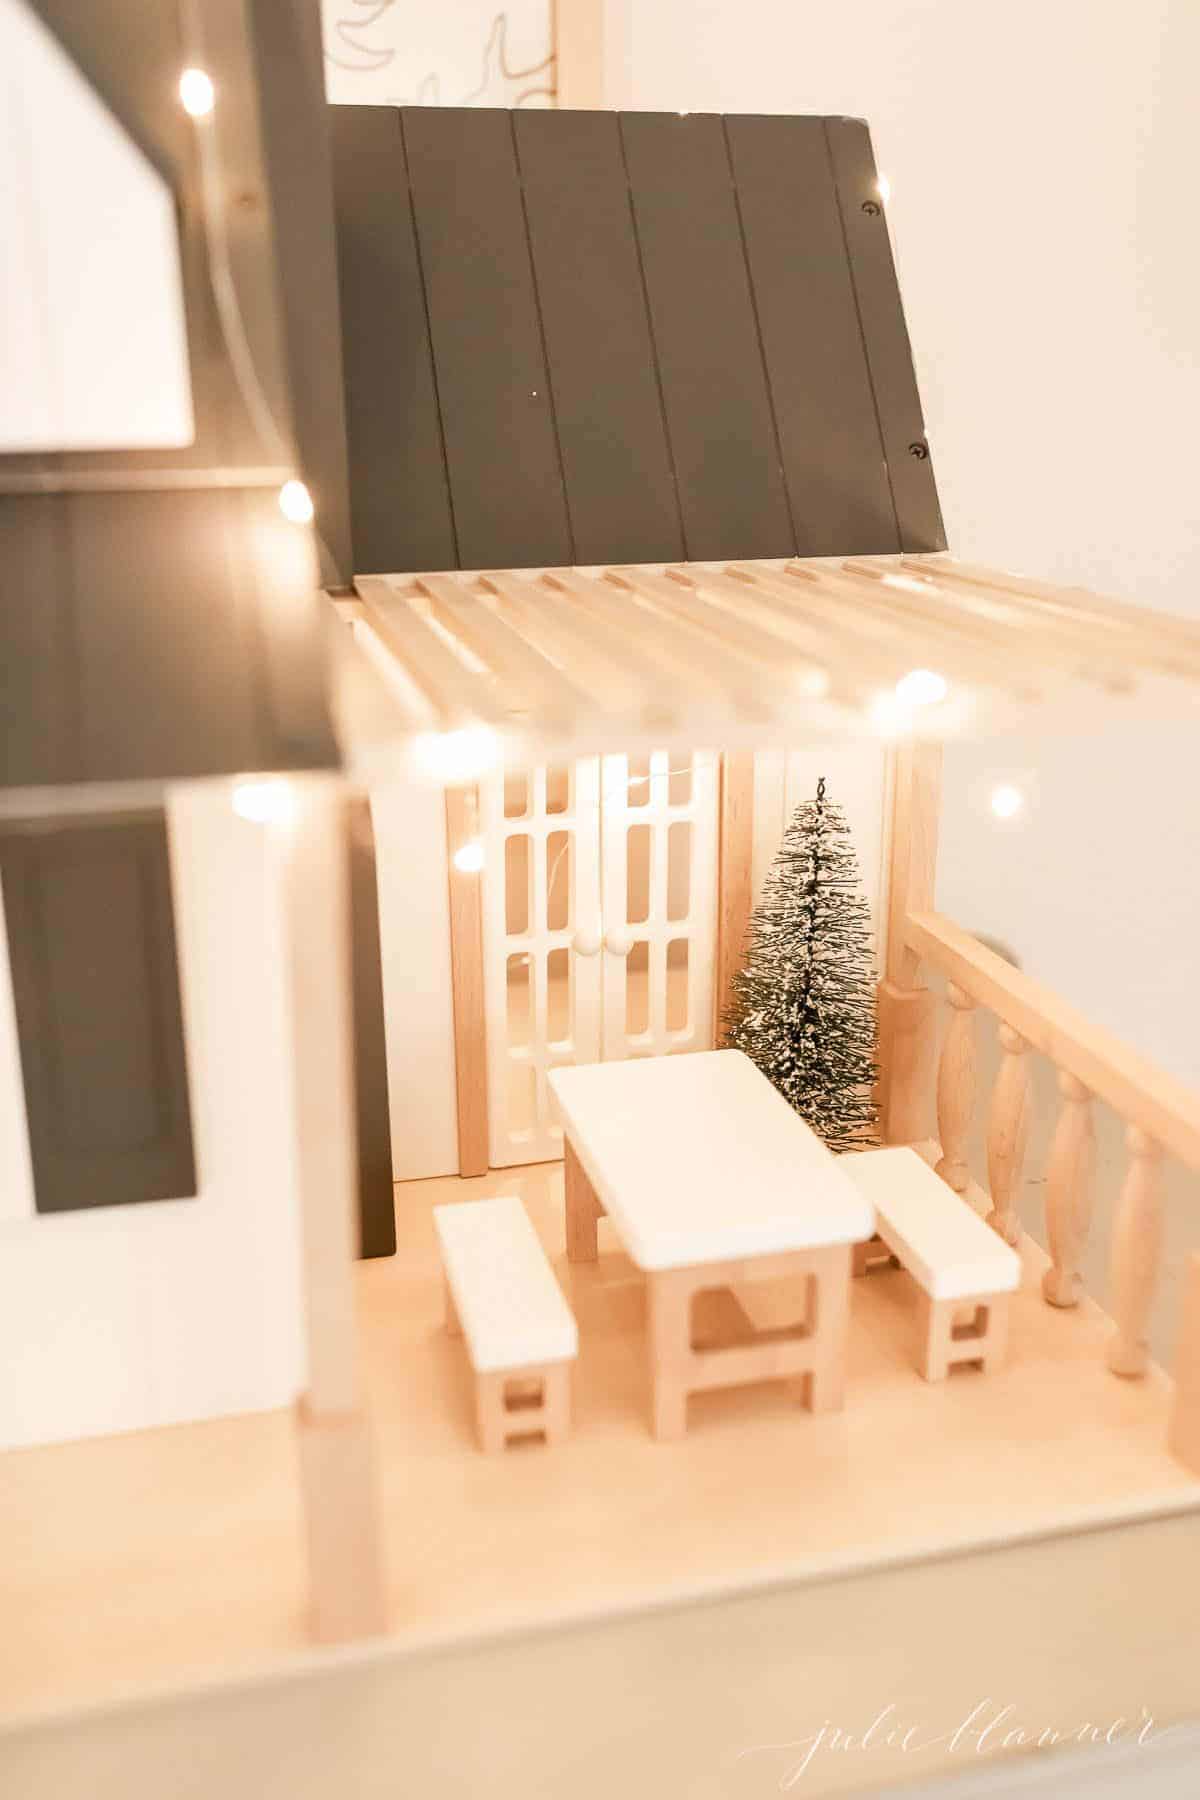 近距离观察一个农舍玩偶屋装饰室内圣诞灯的想法。